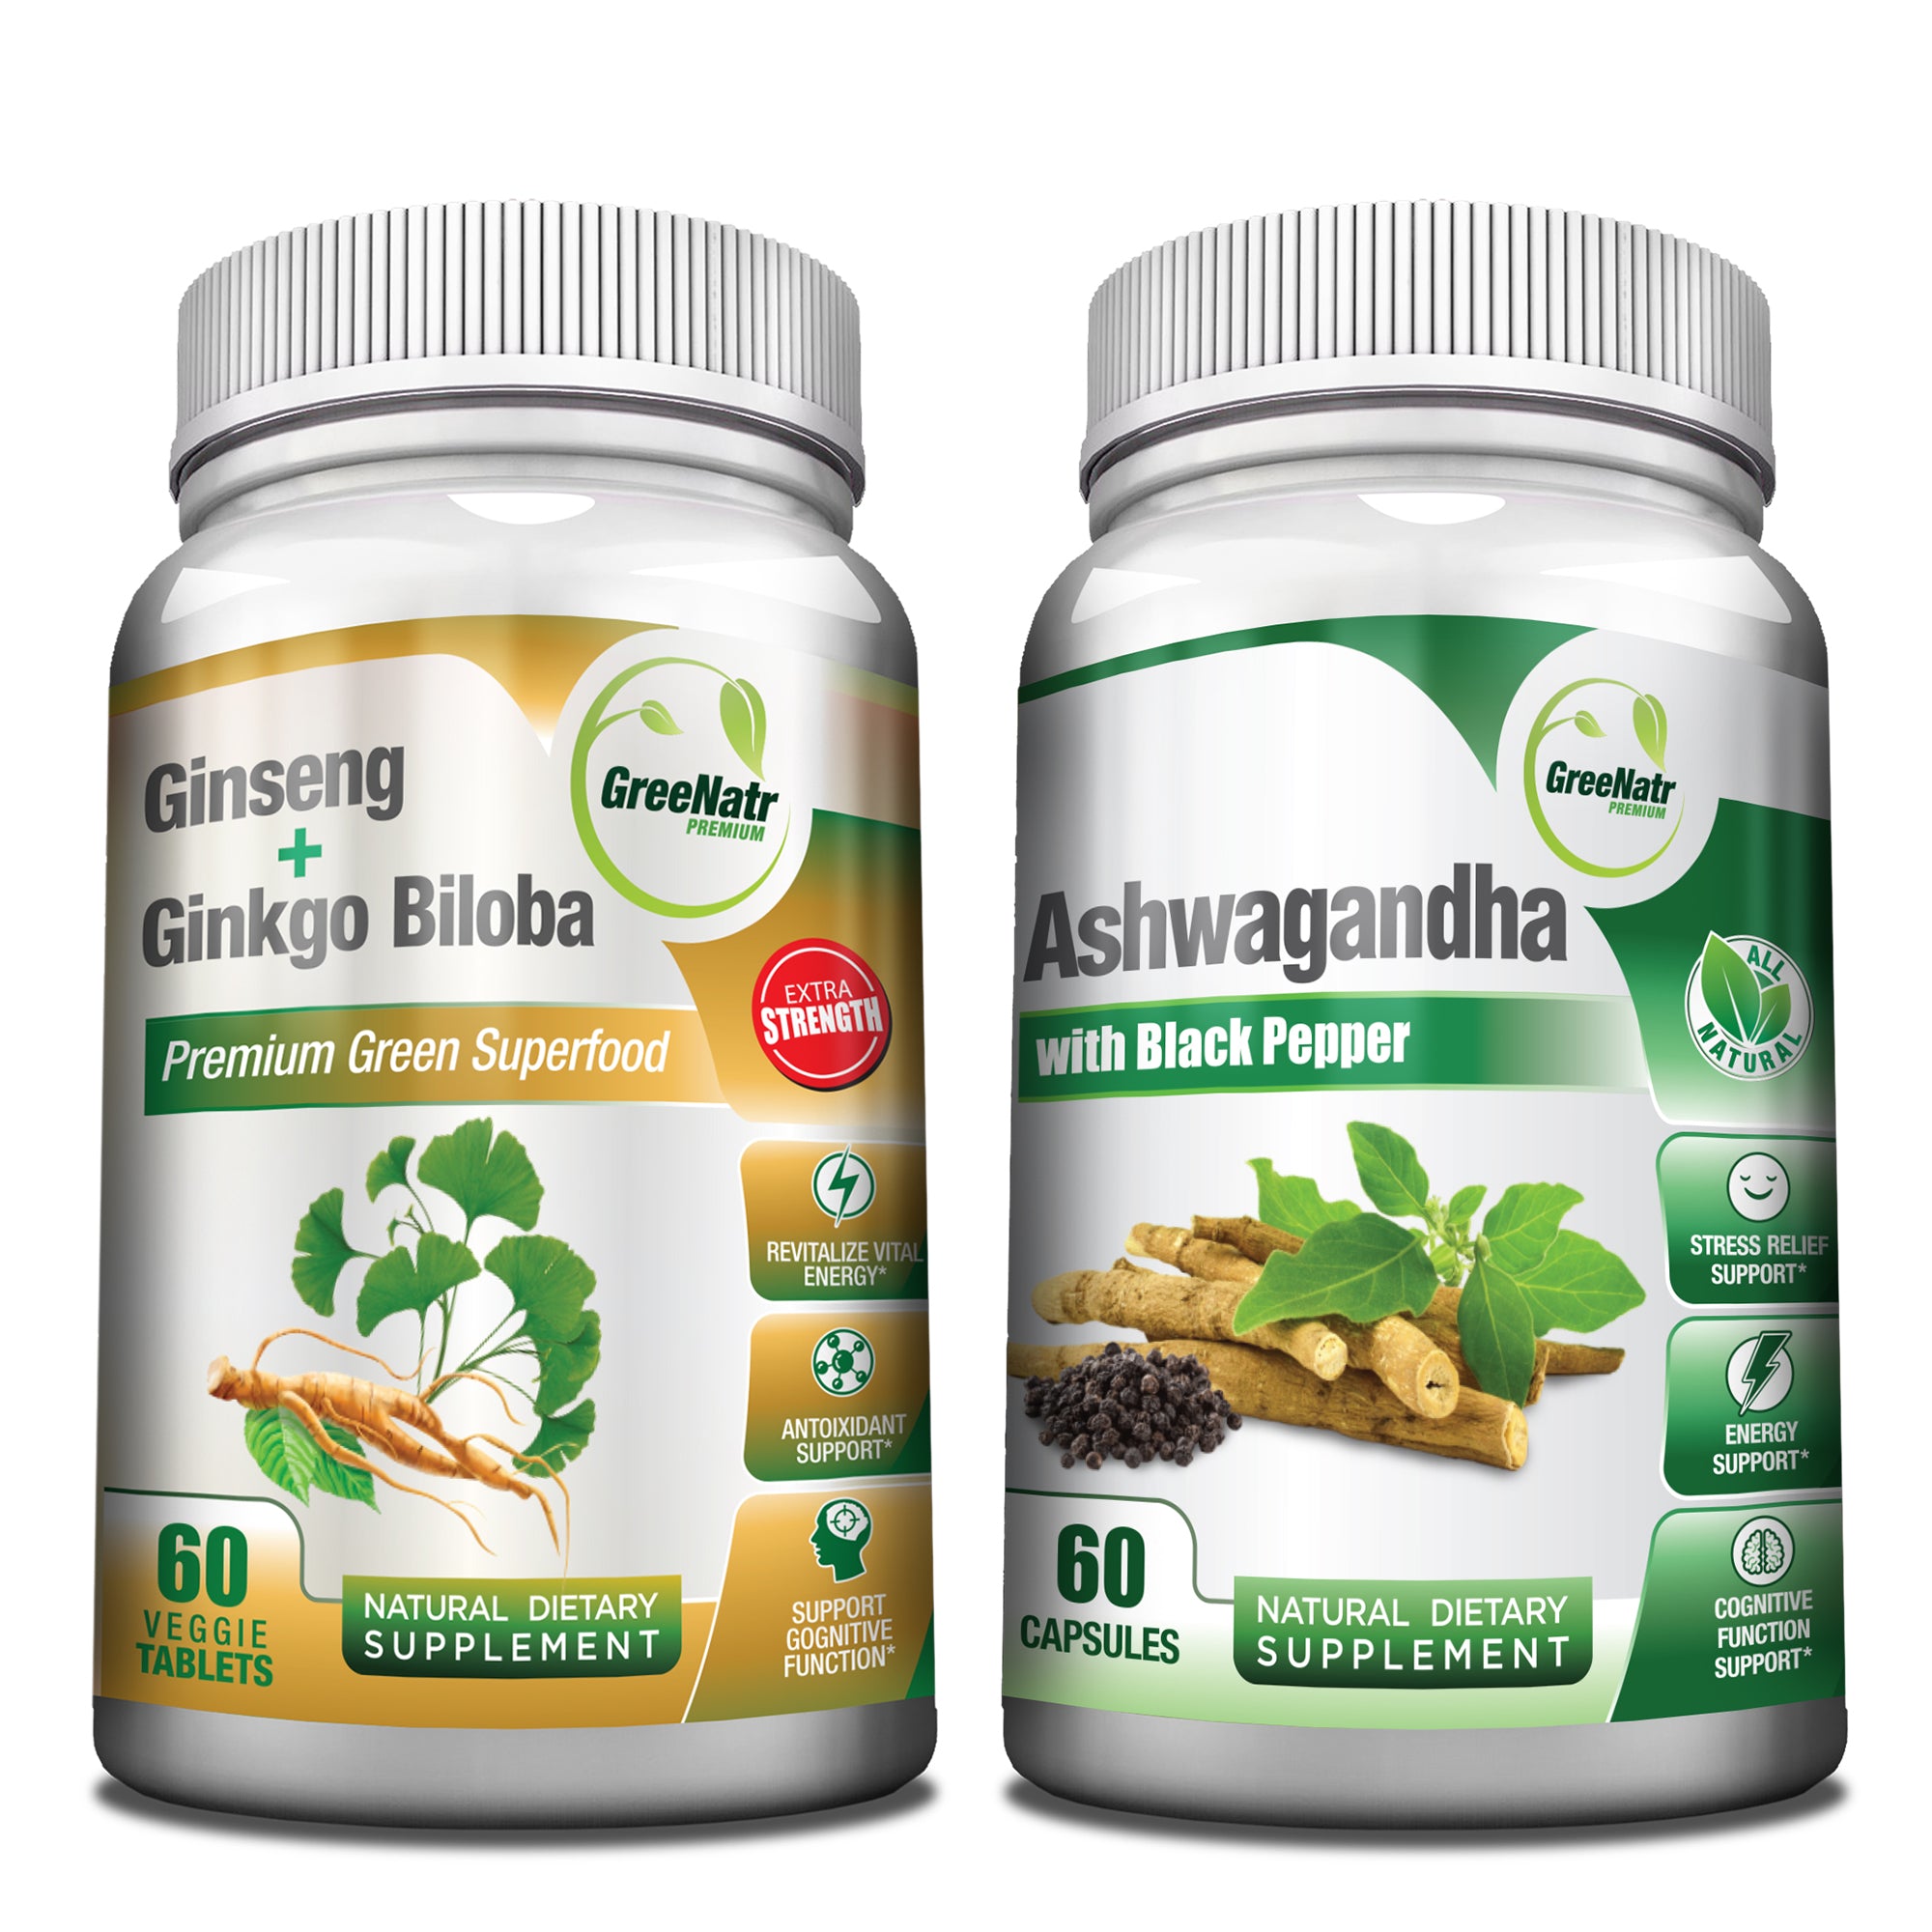 Stress & Anxiety Bundle: Ginseng & Ginkgo Biloba + Ashwagandha